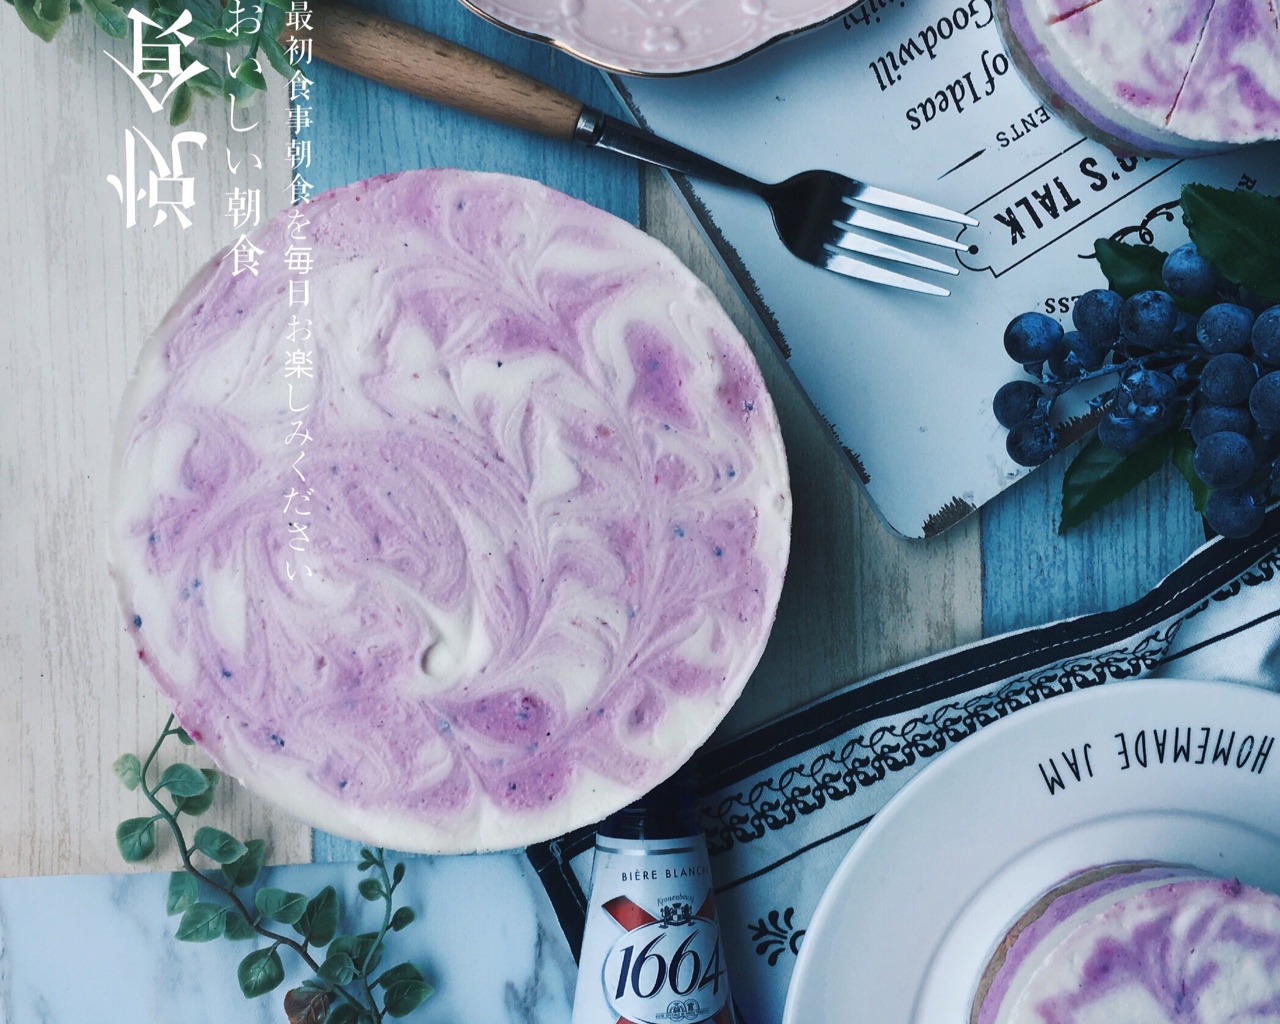 大理石蓝莓酸奶慕斯 | Blueberries & Yogurt   Mousse